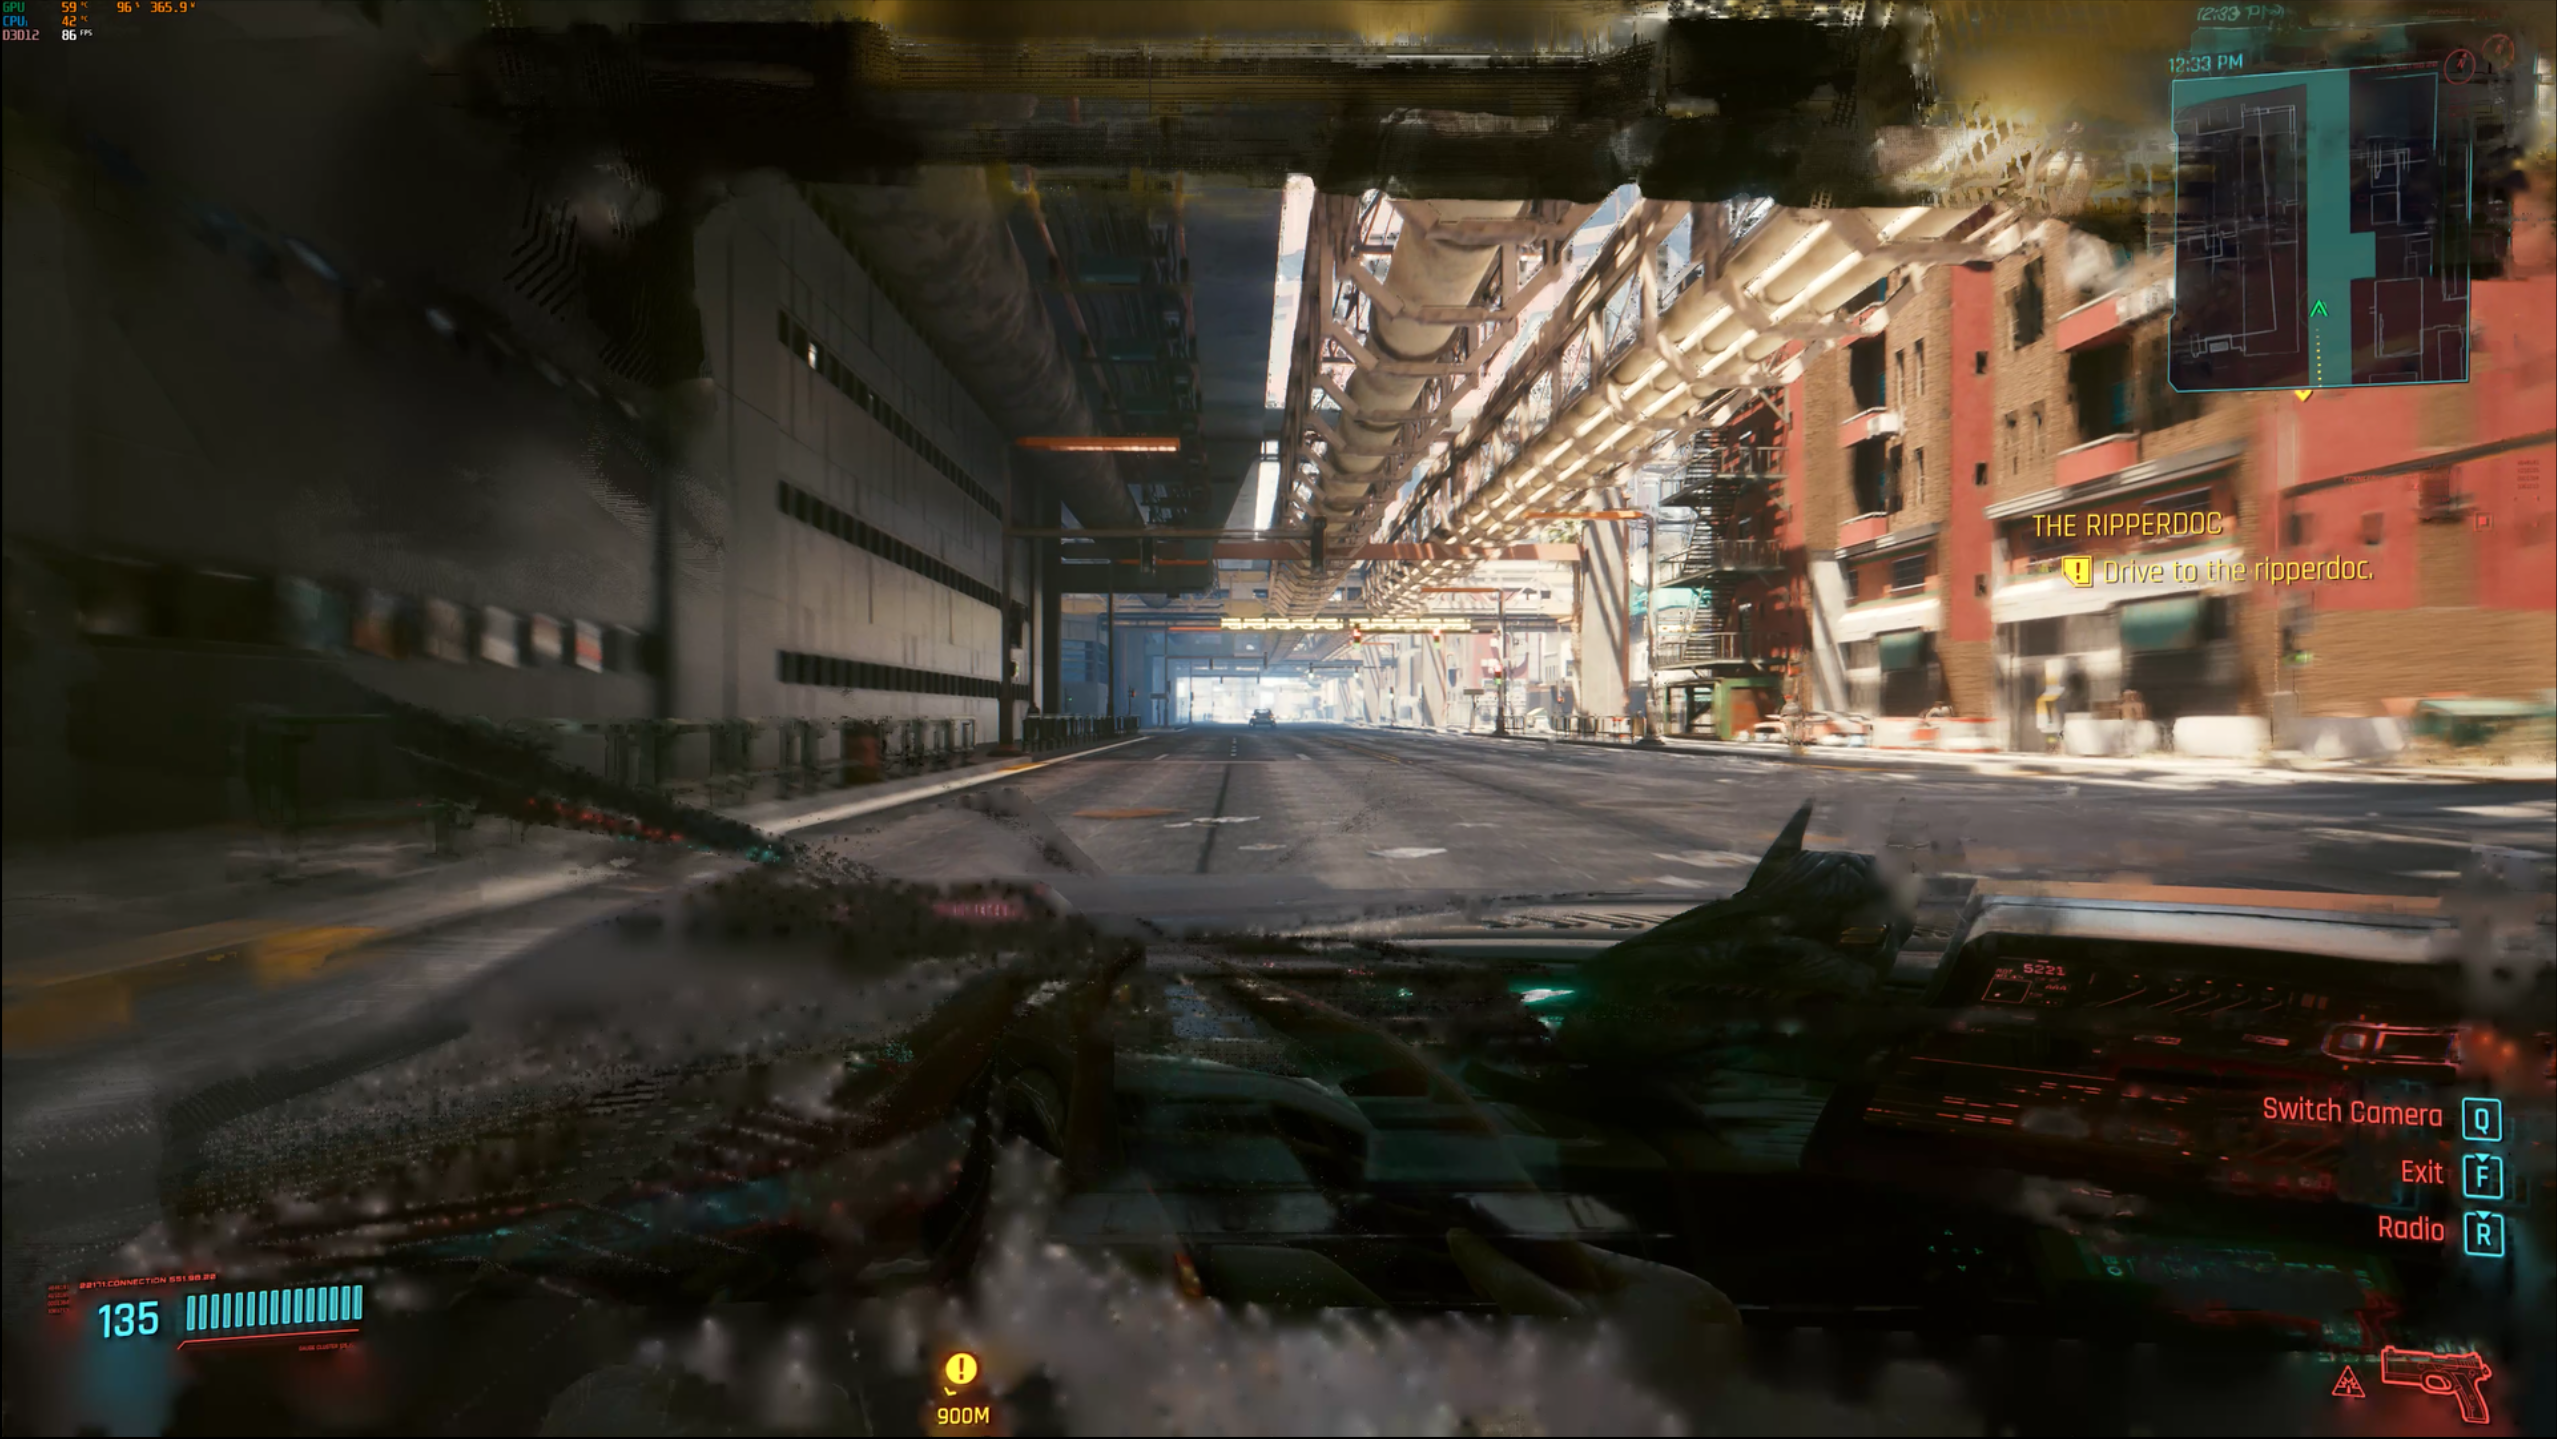 Сгенерированный искусственным интеллектом кадр из DLSS 3, запущенный поверх Cyberpunk 2077. Интерьер автомобиля размыт из-за быстрой смены кадра при переходе камеры.